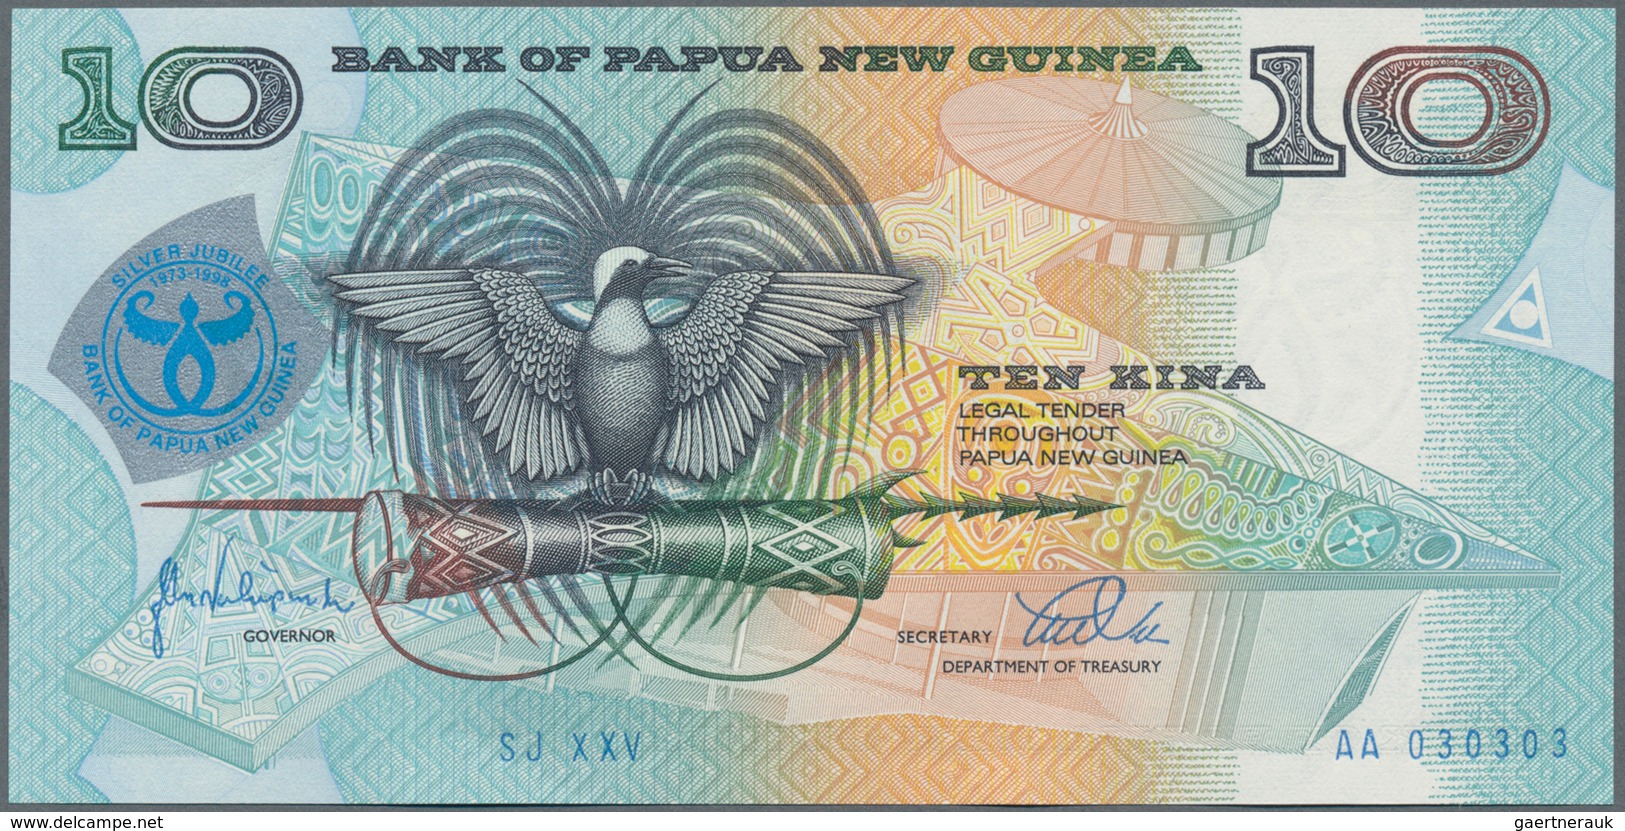 Papua New Guinea: Huge lot with 1225 banknotes comprising 100x 2 Kina P.1, 100x 2 Kina P.5a, 110 pcs